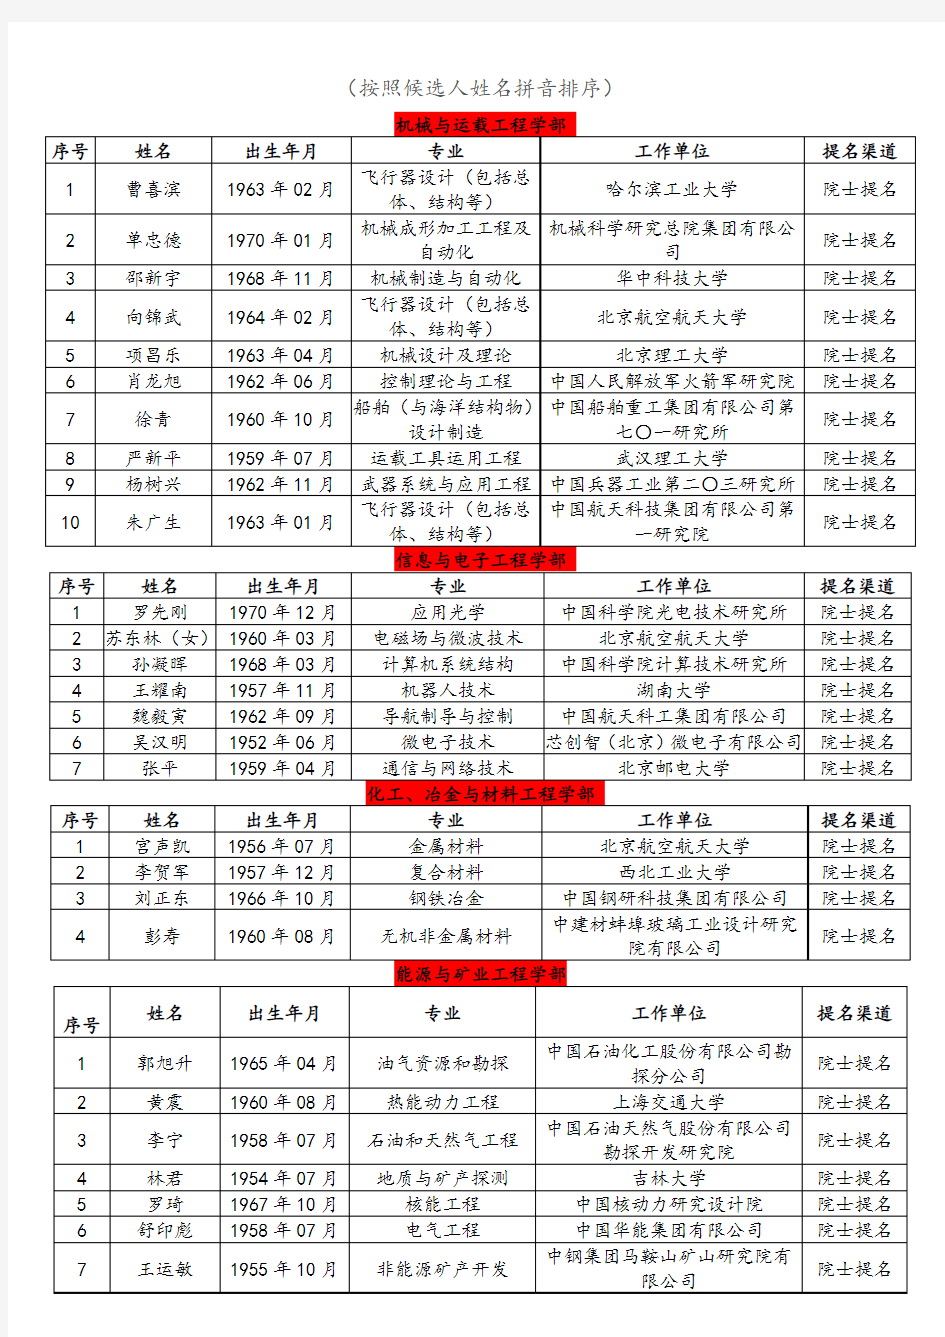 中国工程院2019年院士增选名单